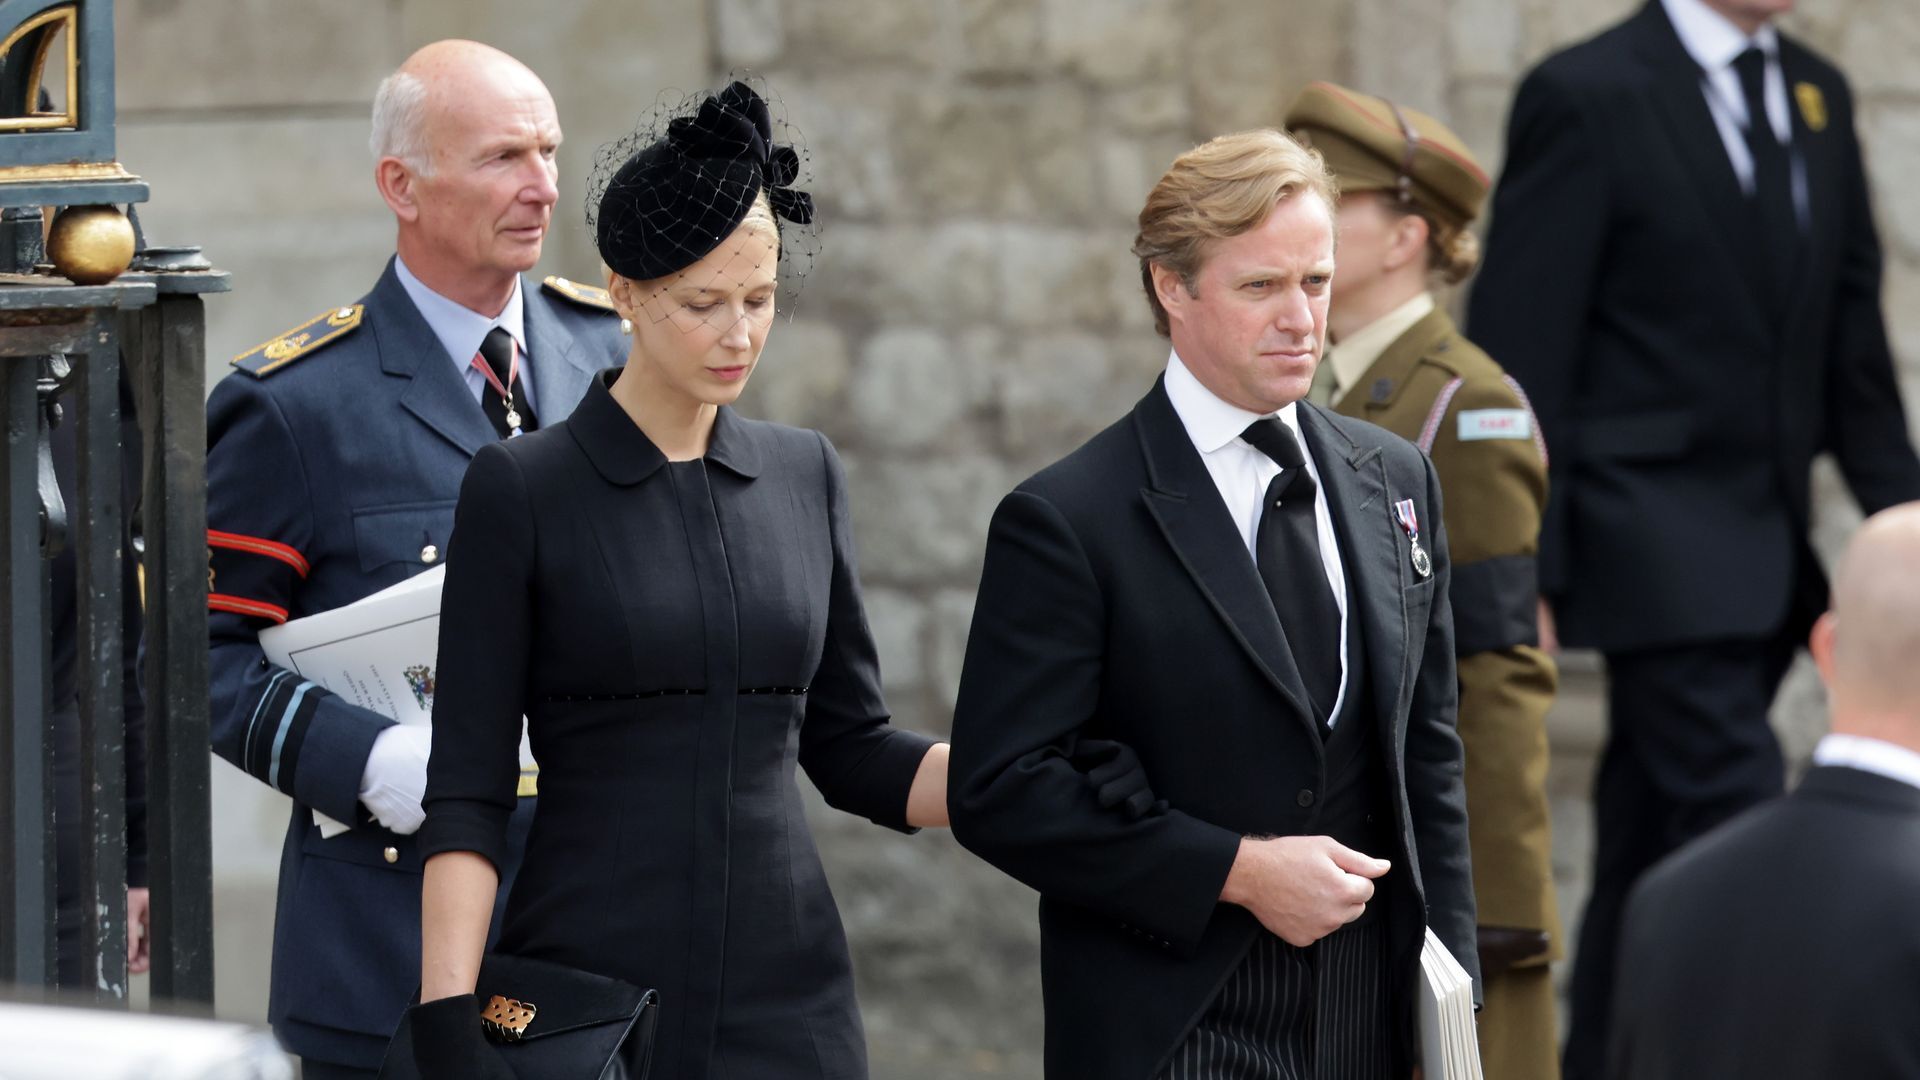 مأساة أجمل زوجين.. مفاجأة لم تكن في الحسبان في قضية وفاة صهر العائلة الحاكمة البريطانية (صور)